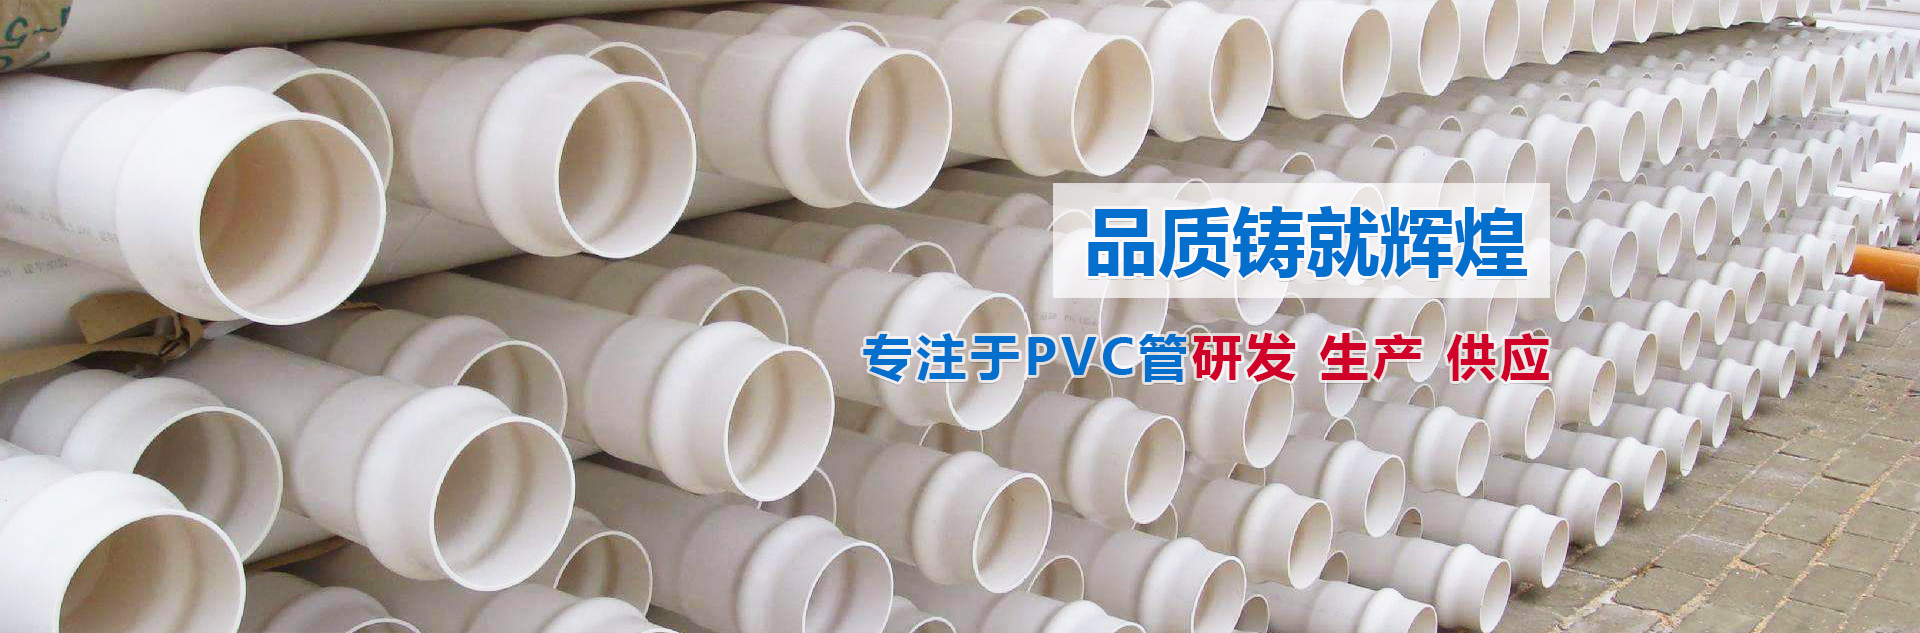 內蒙PVC管